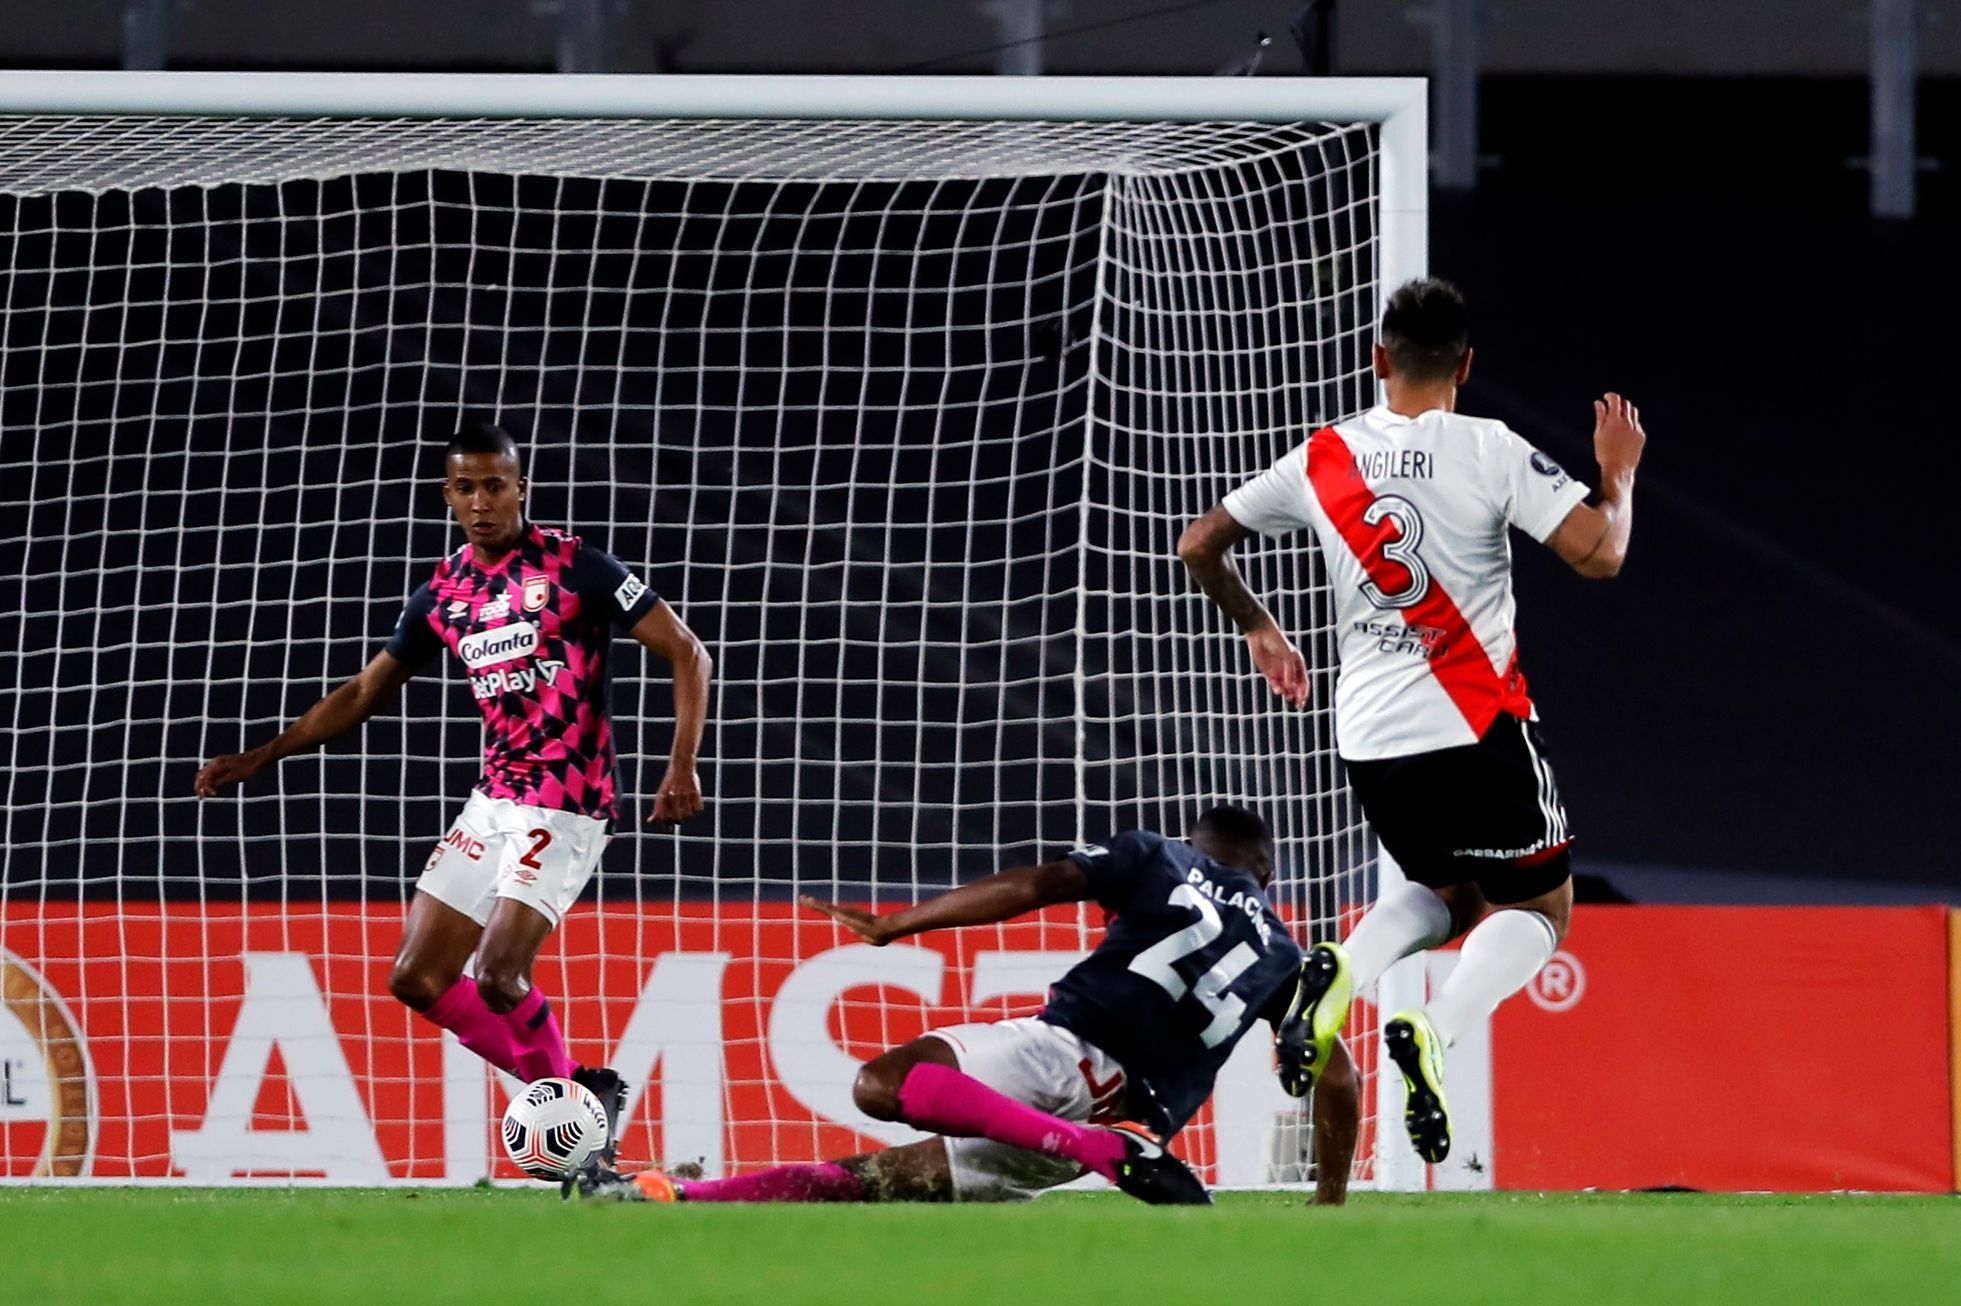 Copa Libertadores - Group D - River Plate v Santa Fe